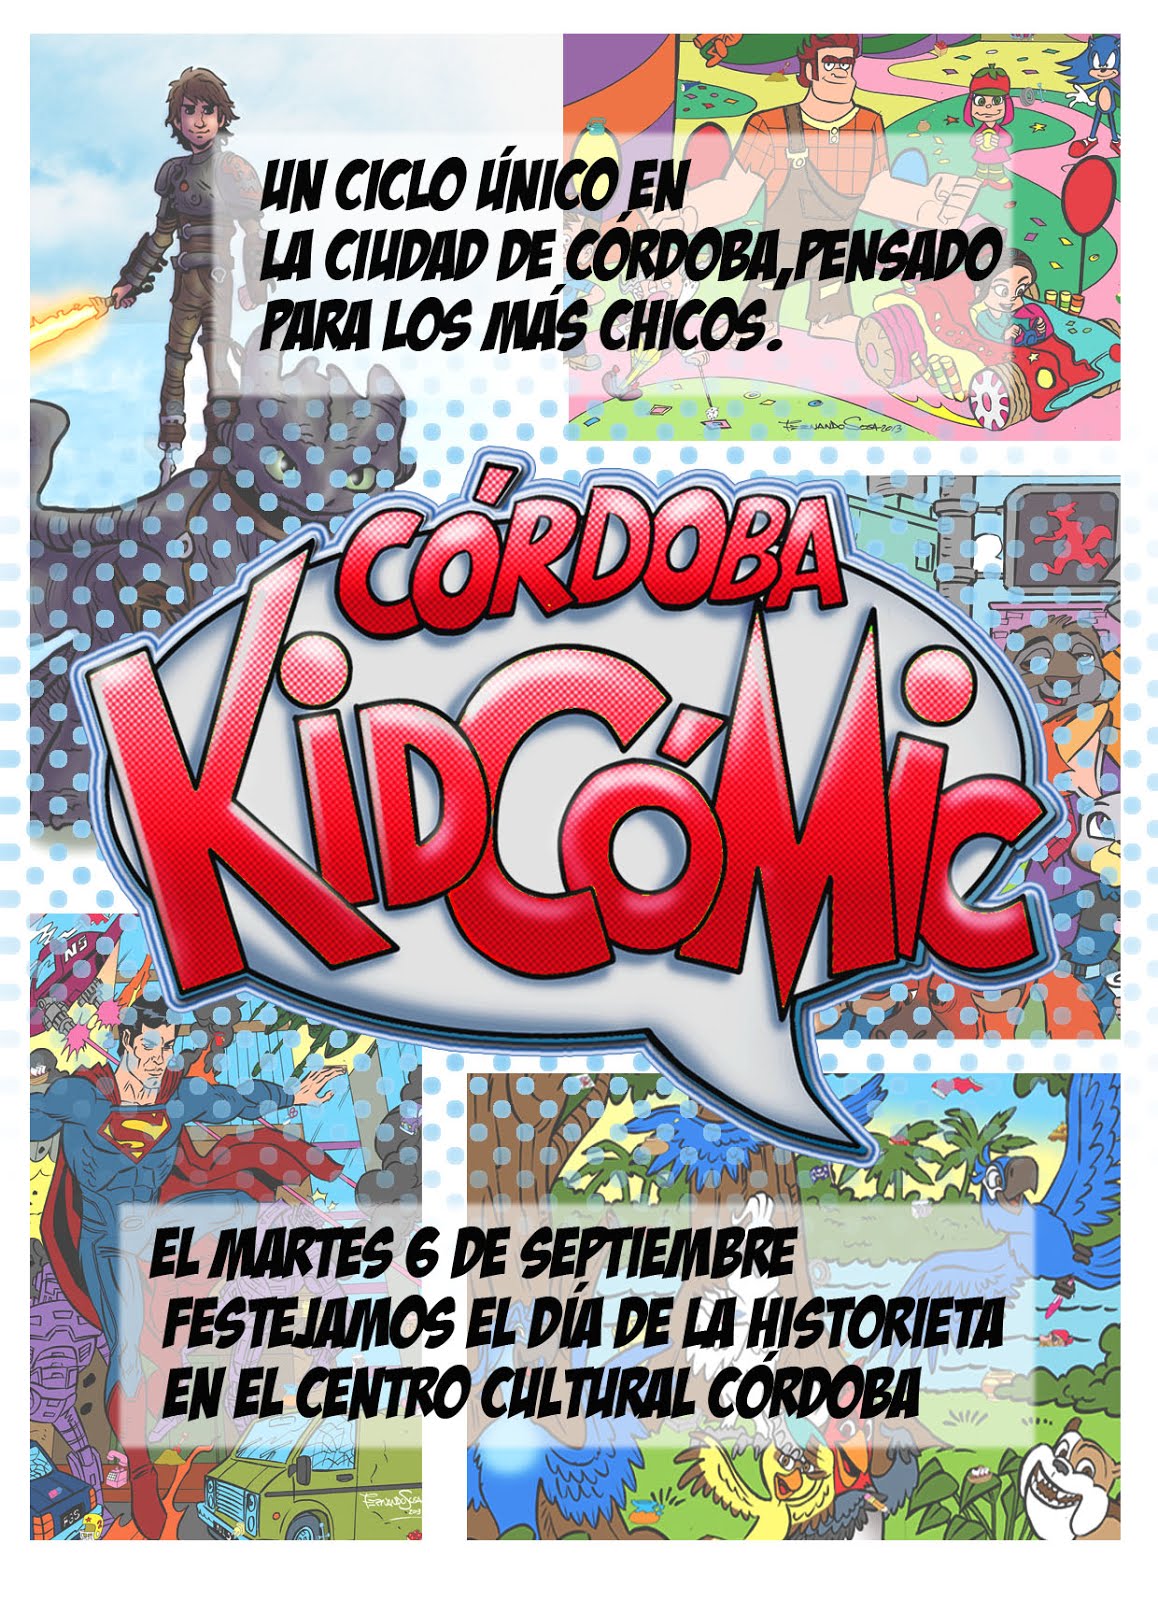 Córdoba Kidcómic